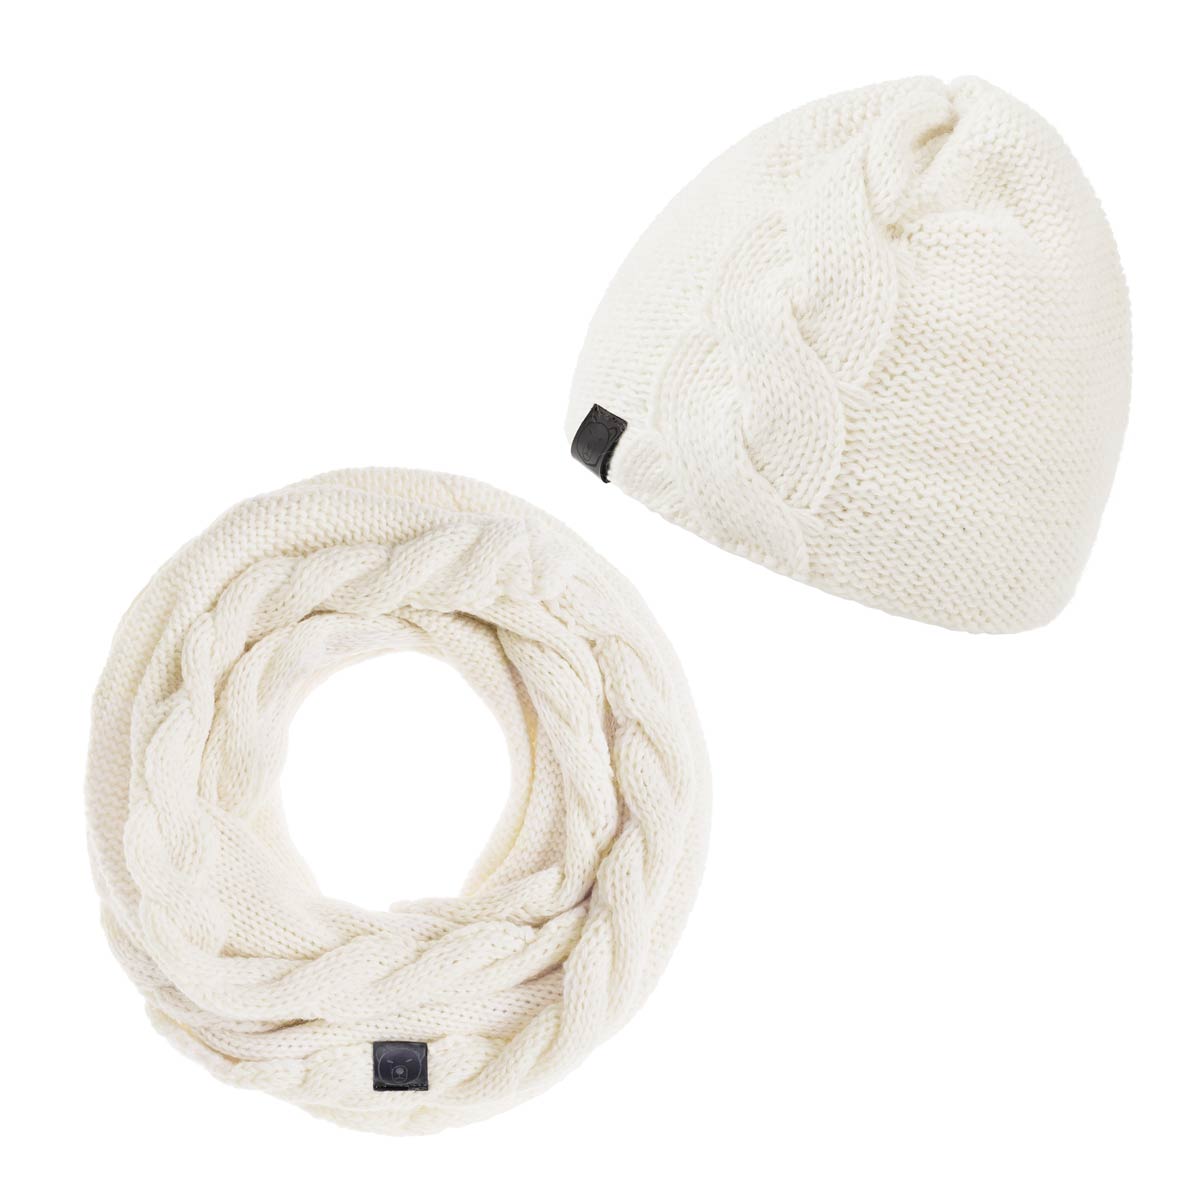 PK-00128_F12-1--_Ensemble-hiver-bonnet-snood-blanc